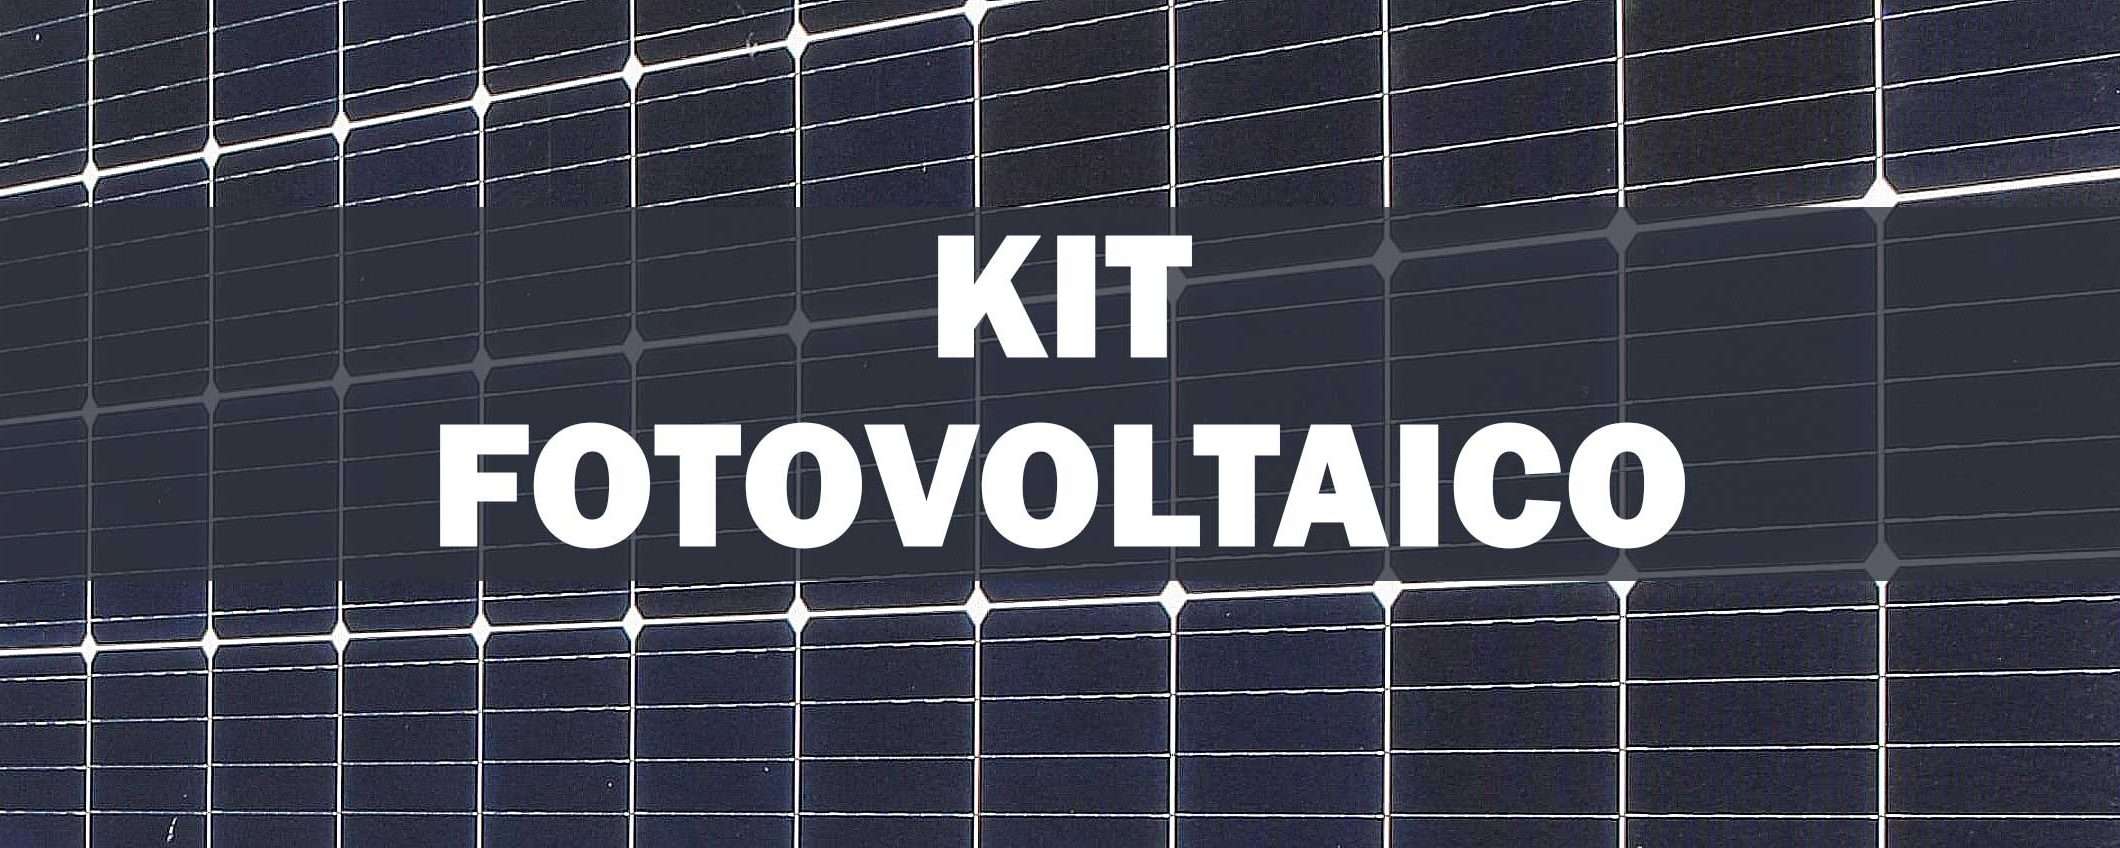 Energia fai-da-te: kit fotovoltaico a PREZZO STRACCIATO